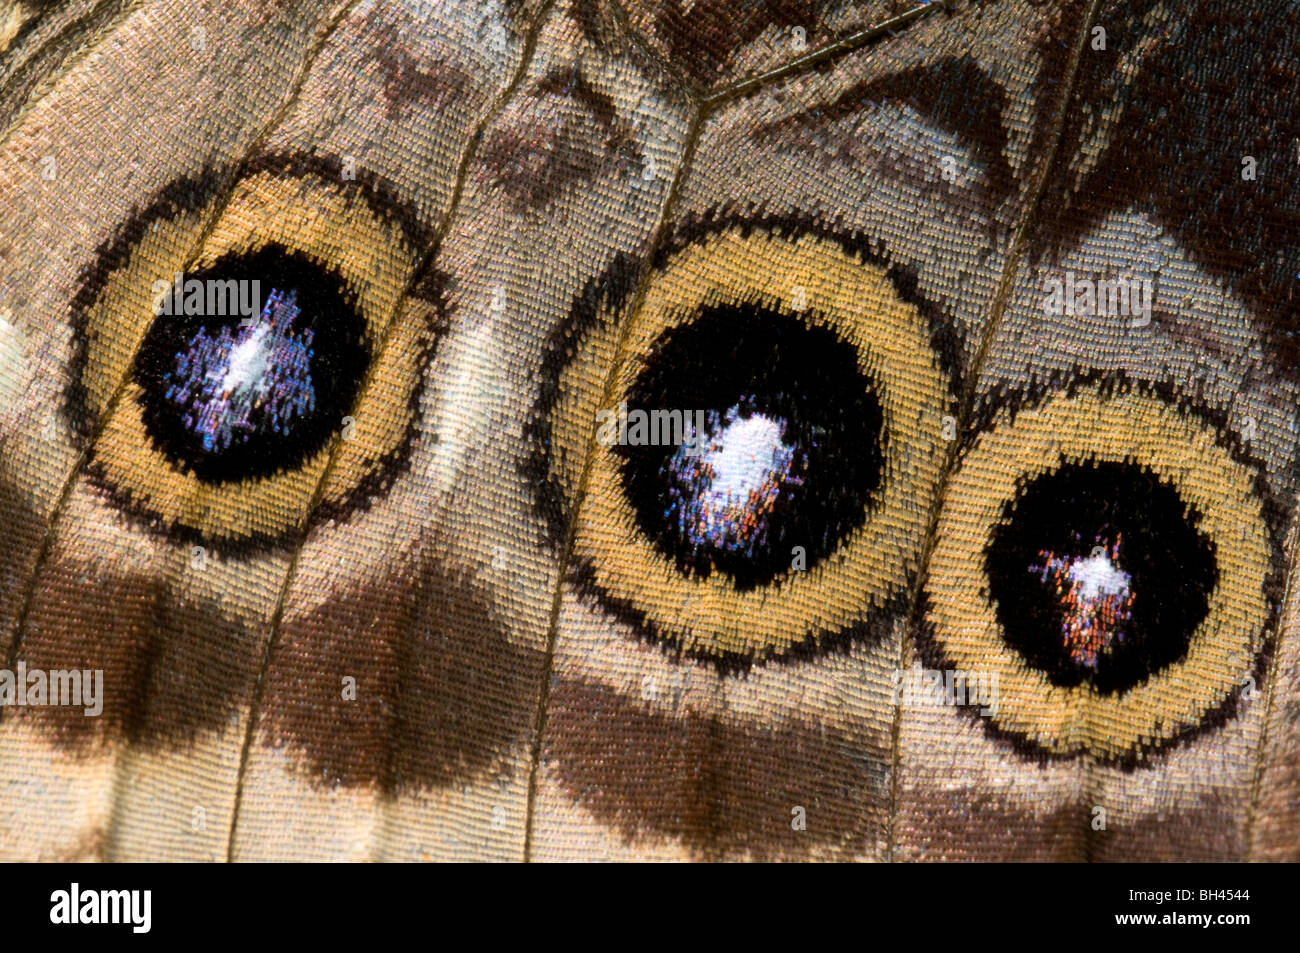 Wing markings of blue morpho butterfly (Morpho peleides) showing eye-spots. Stock Photo